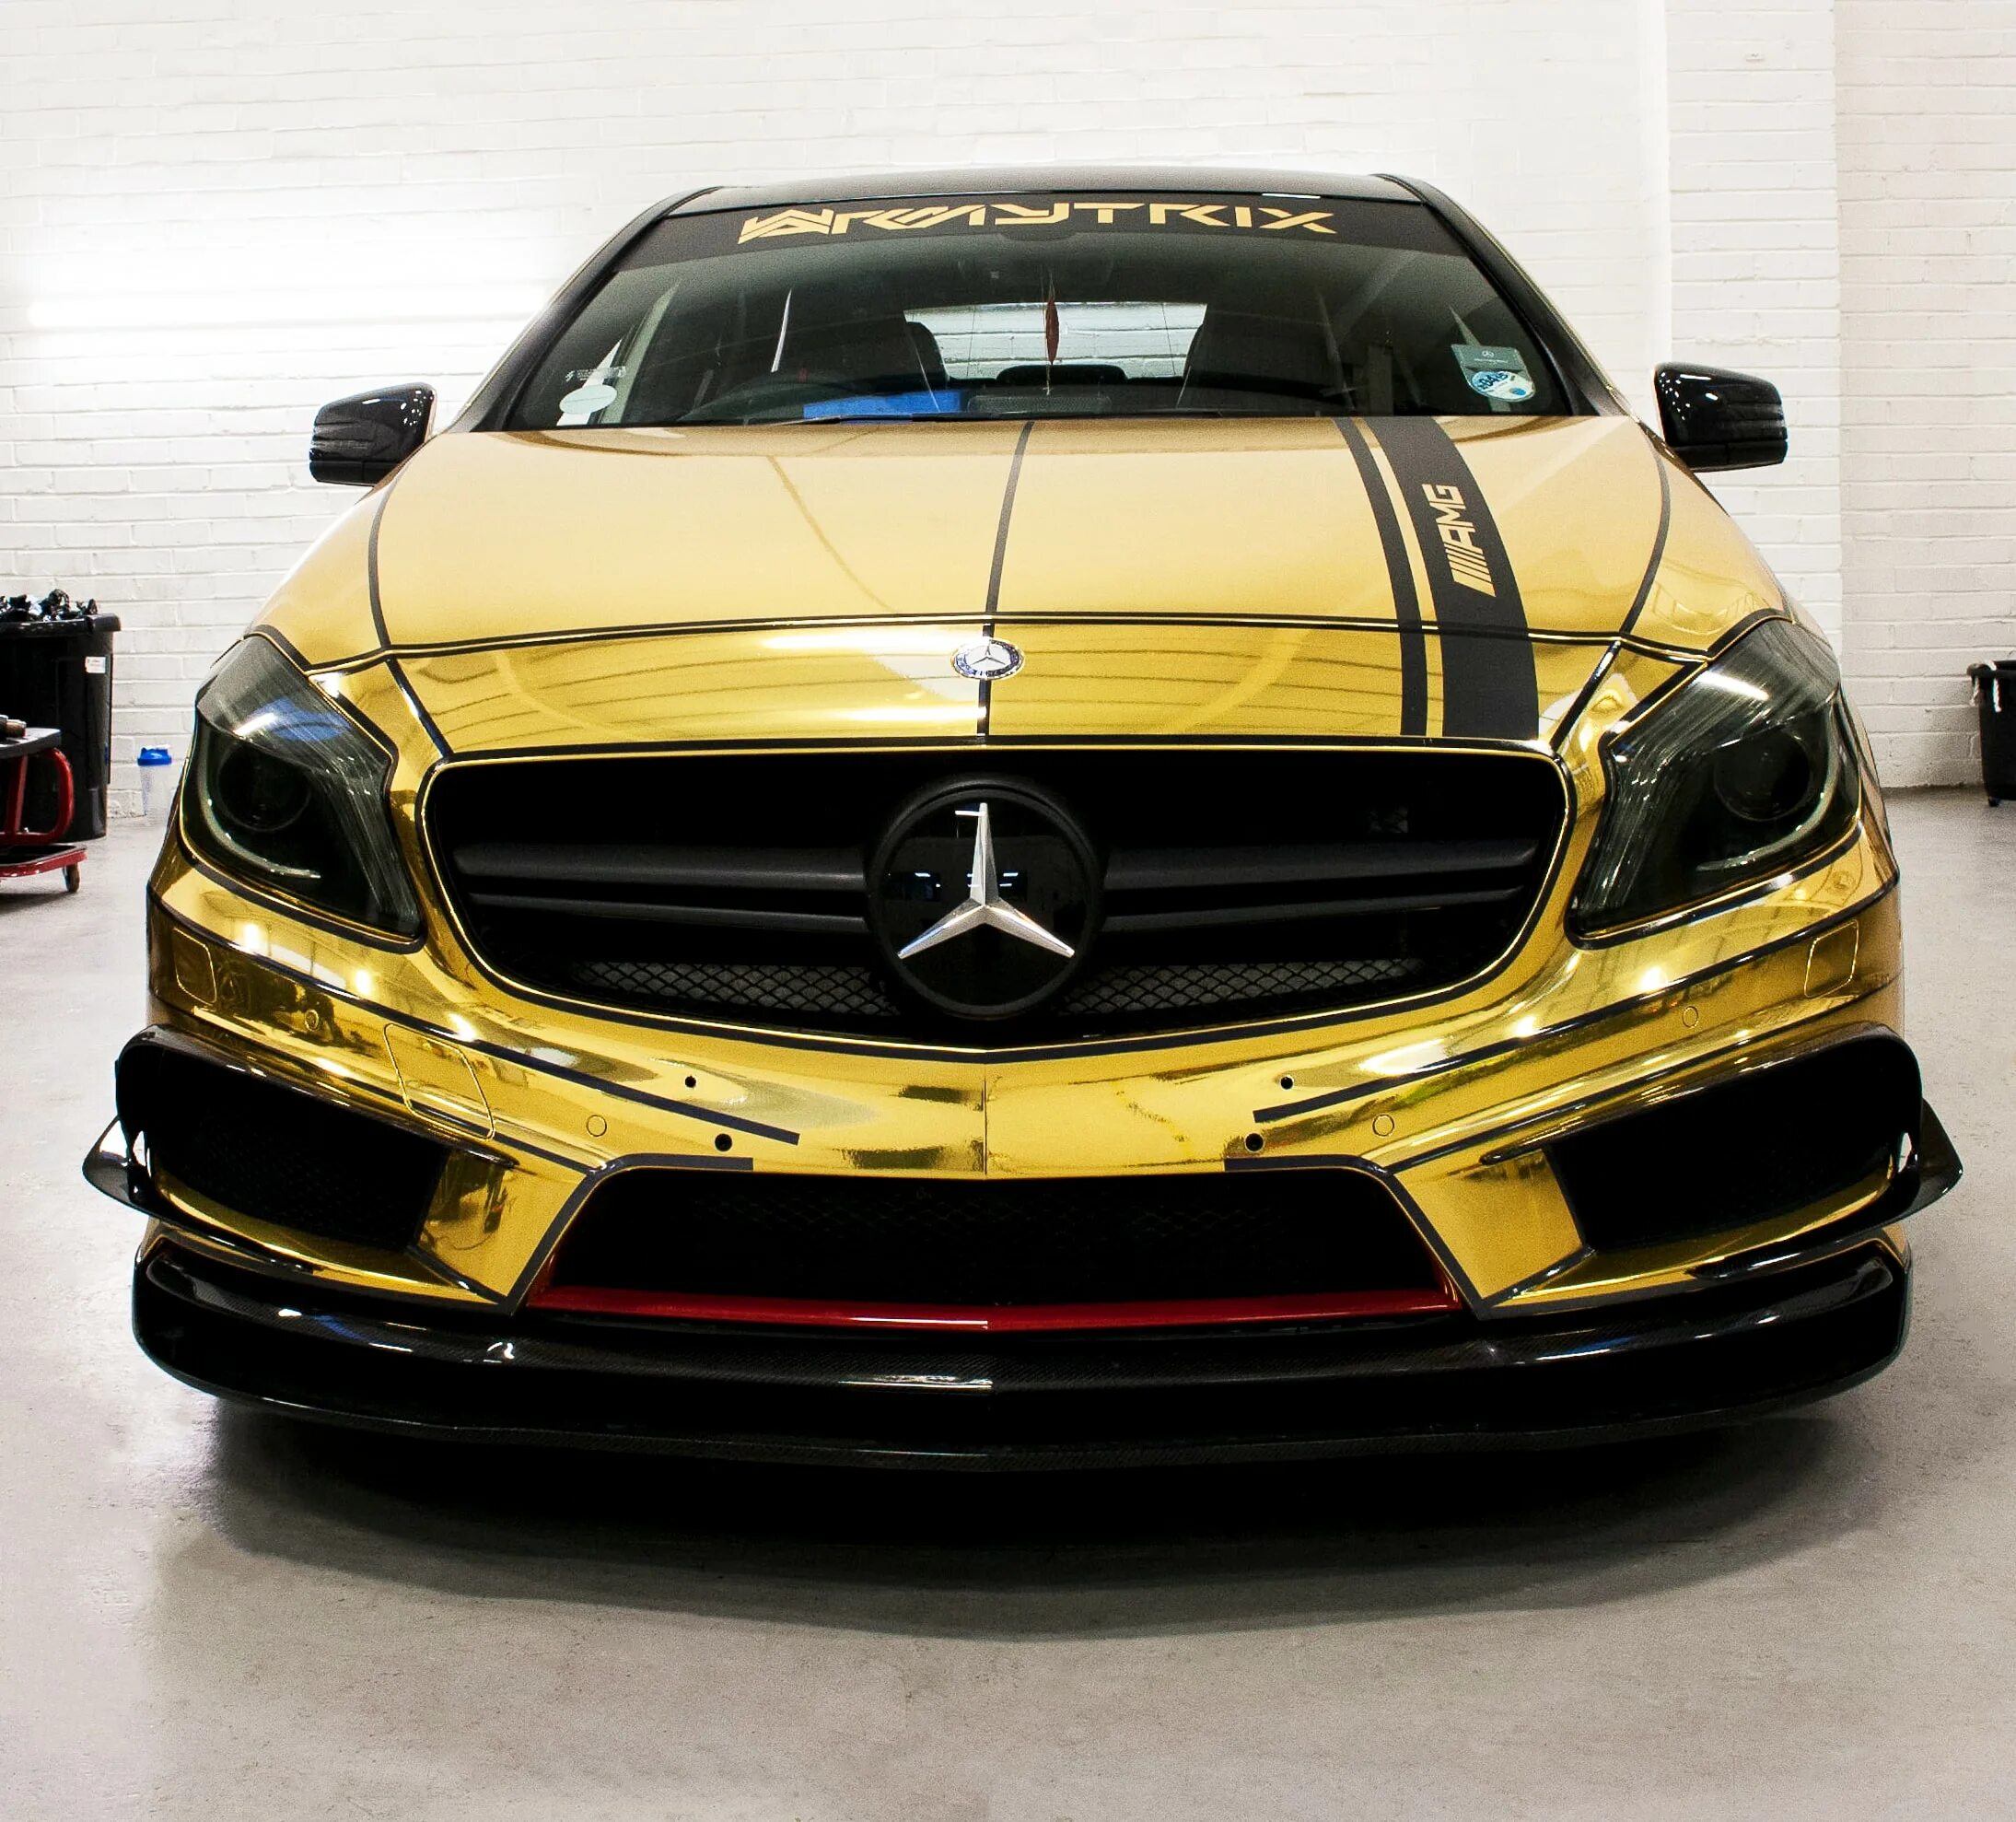 Дорогой мерс. Mercedes AMG c63 золотой. Мерседес е63 АМГ золото. ЦЛС 63 АМГ золотой. Mercedes Benz c63 AMG В золоте.